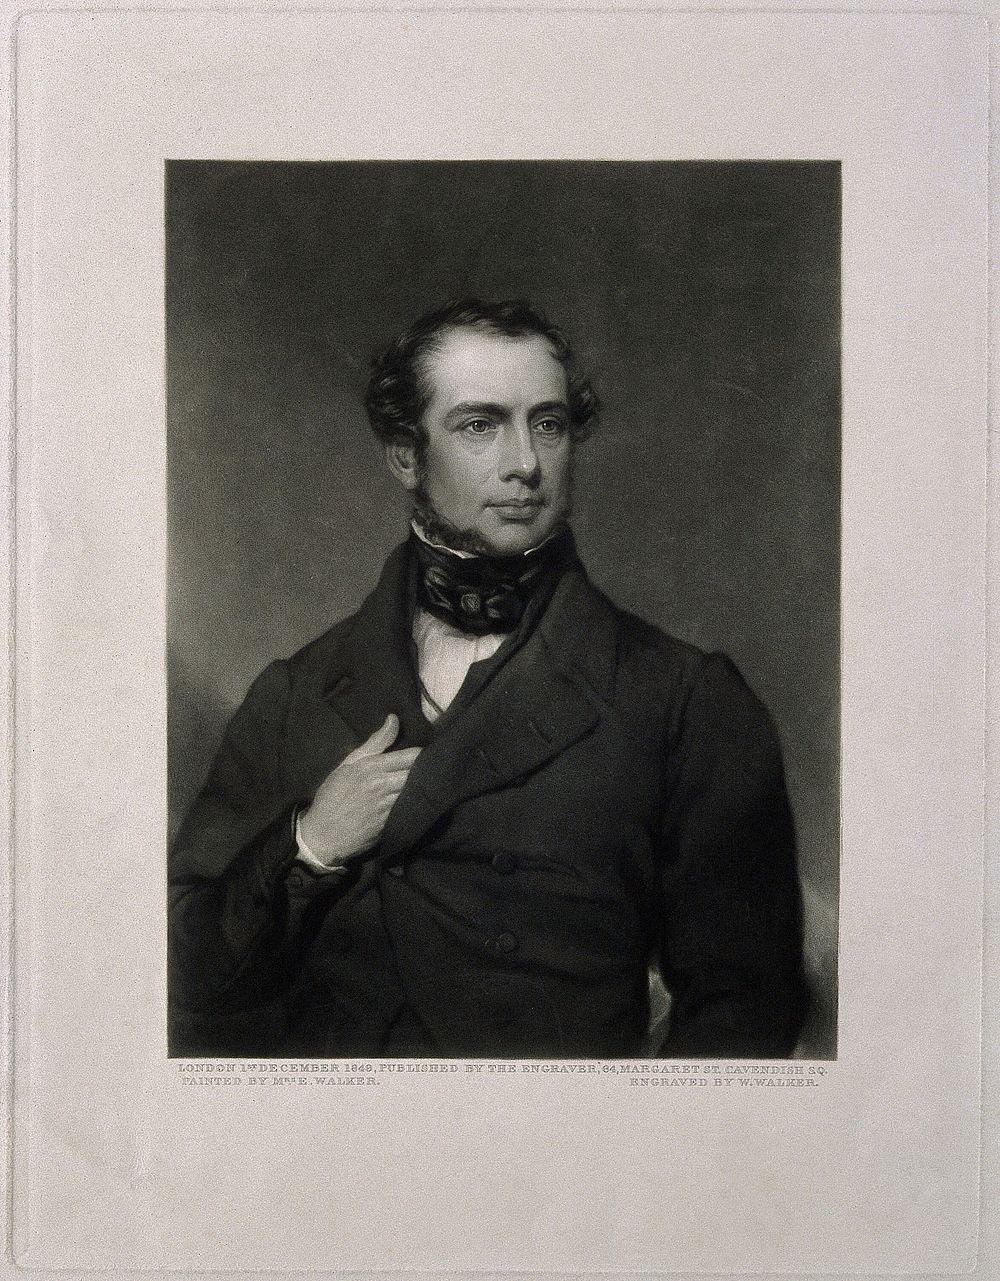 Samuel Armstrong Lane. Mezzotint by W. Walker, 1849, after Elizabeth Walker.